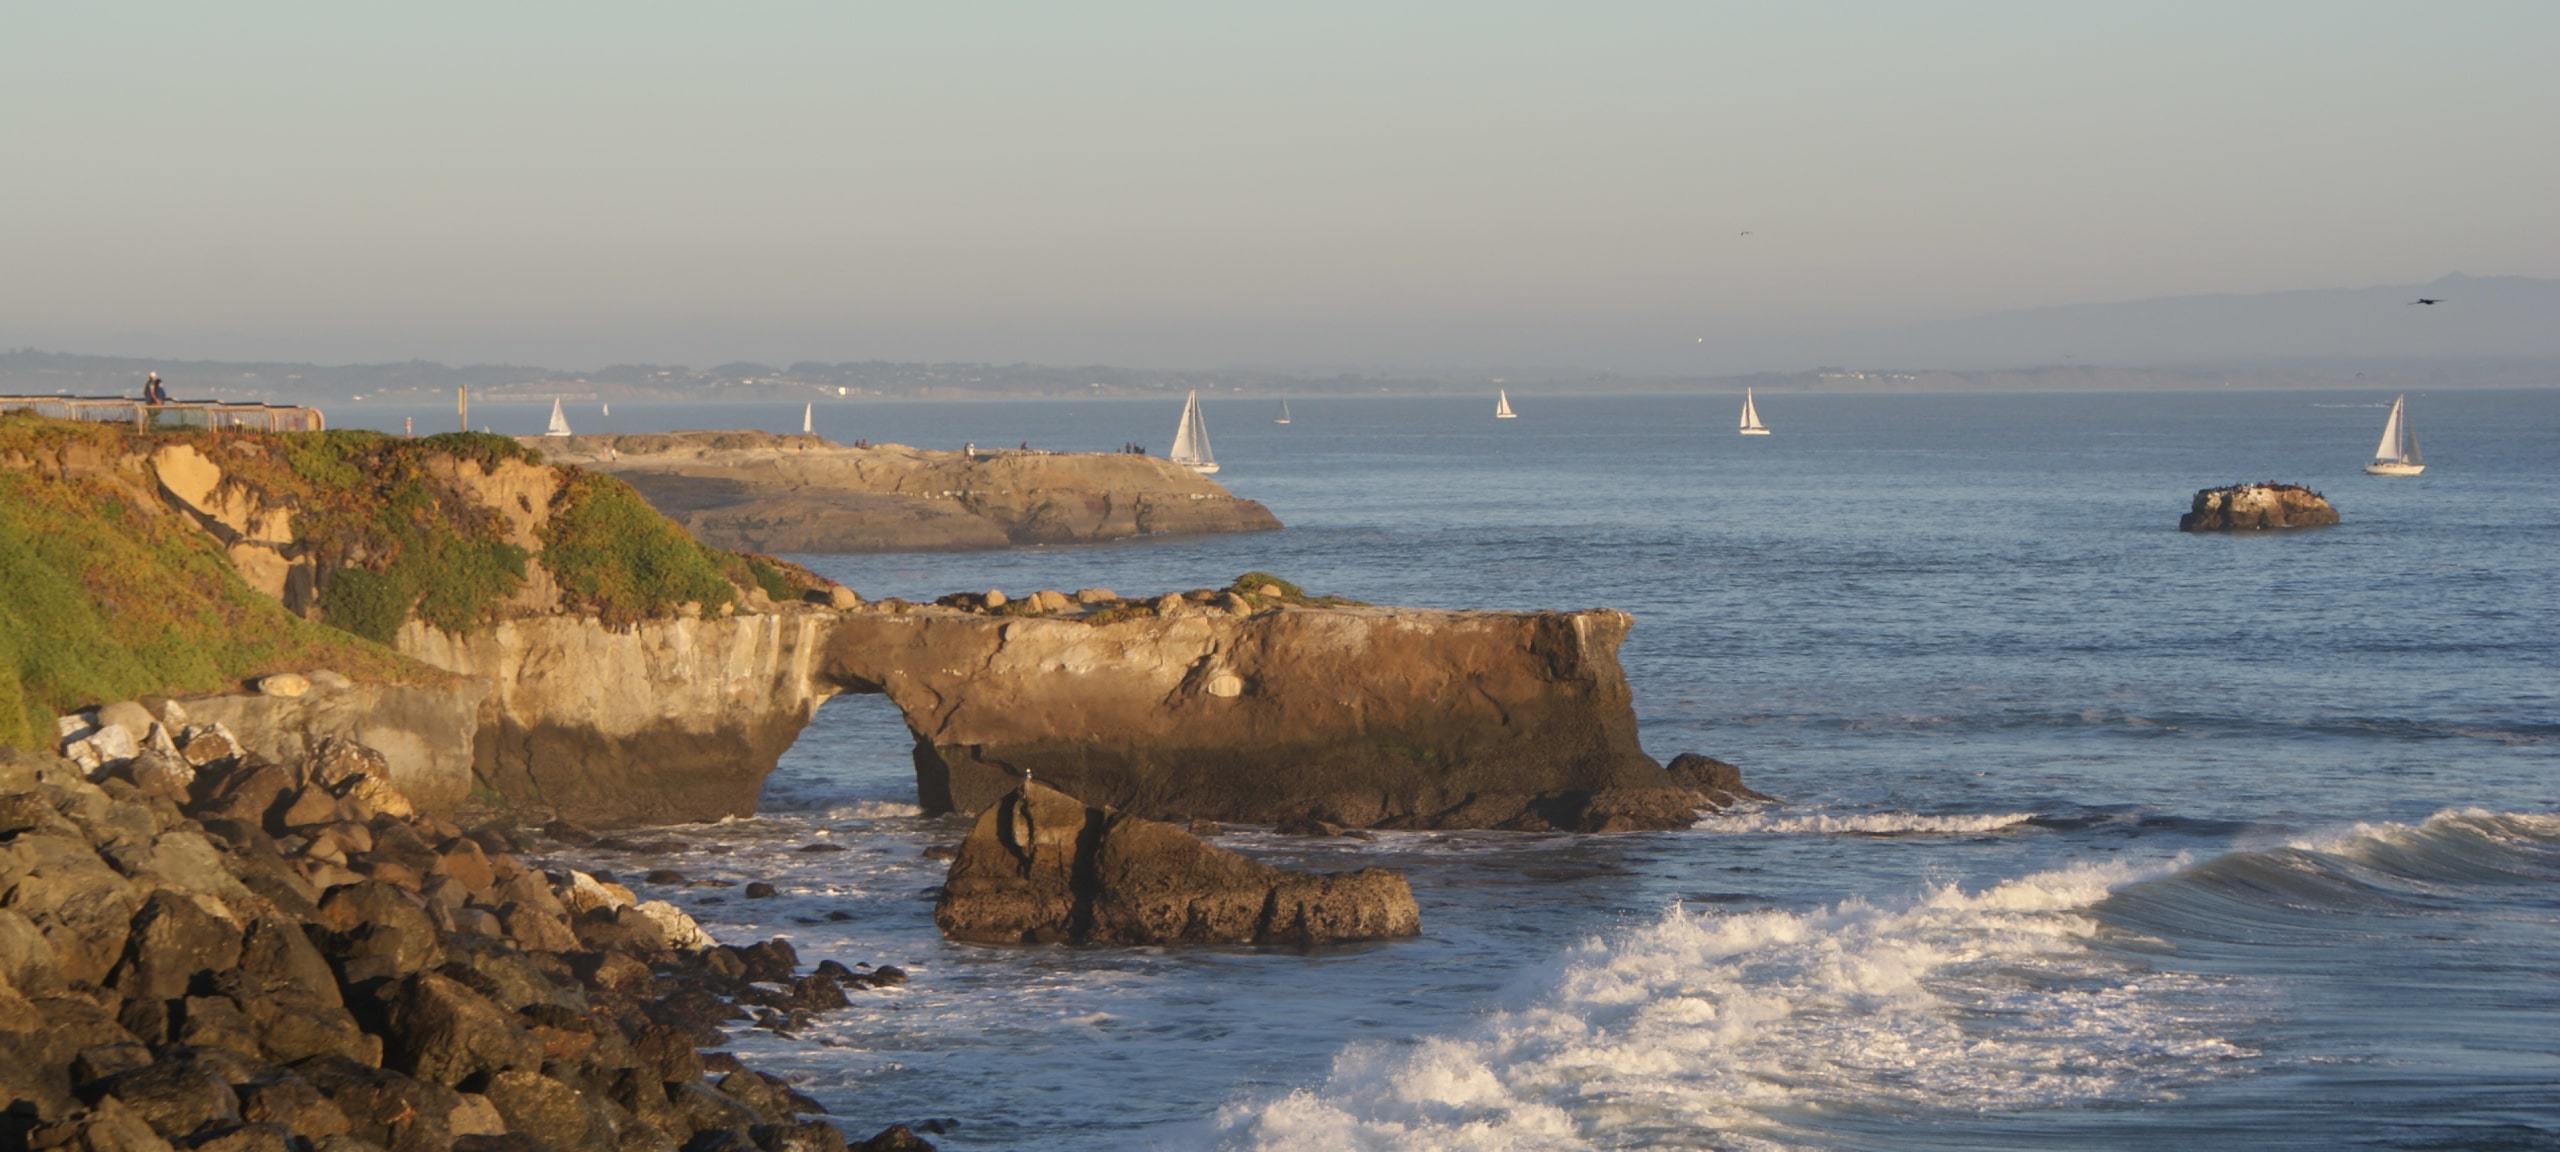 Rocks and waves at Santa Cruz, CA beach